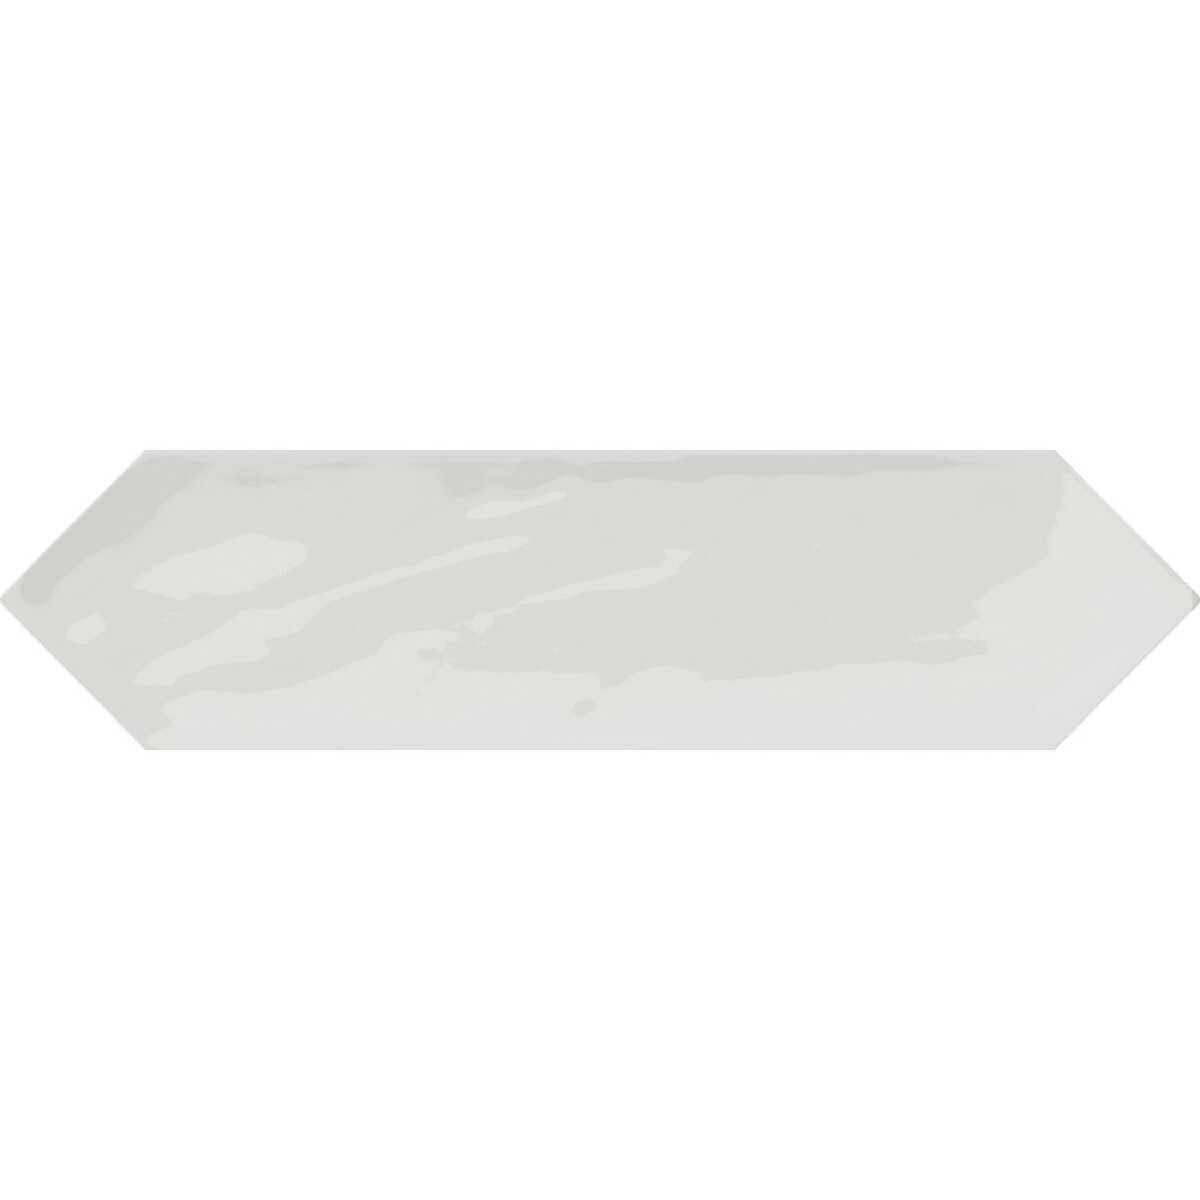 Porcelanato Monochrome Picket White Brillo - 0.44m2 